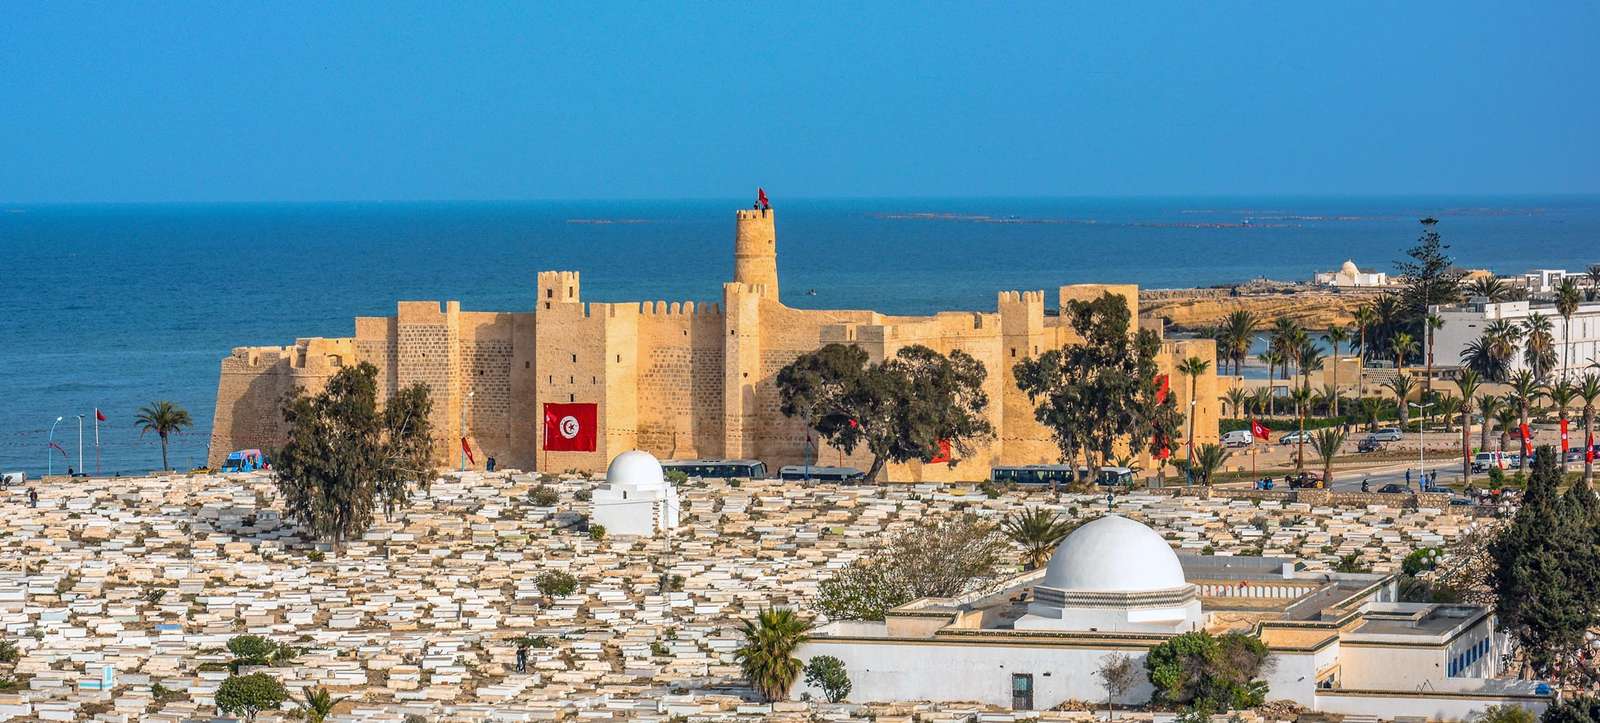 Monastir Ribat in Tunisia in Africa puzzle online